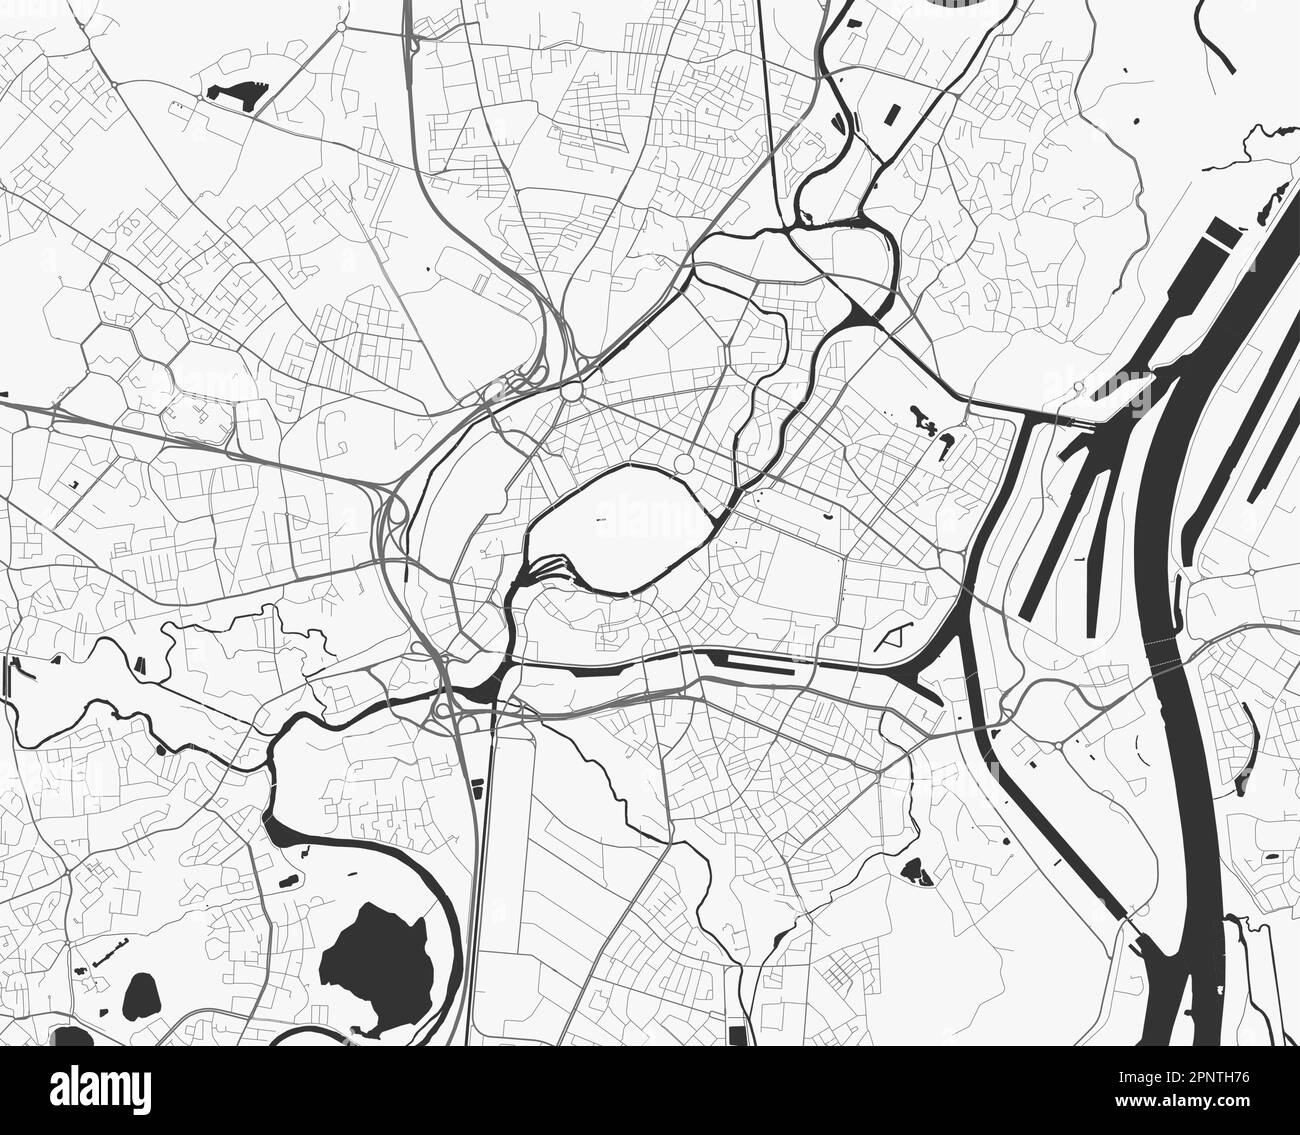 Stadtplan von Straßburg. Vektor-Illustration, Strasbourg Karte Graustufen Kunstposter. Straßenkarte mit Straßen, Ansicht der Metropolregion. Stock Vektor